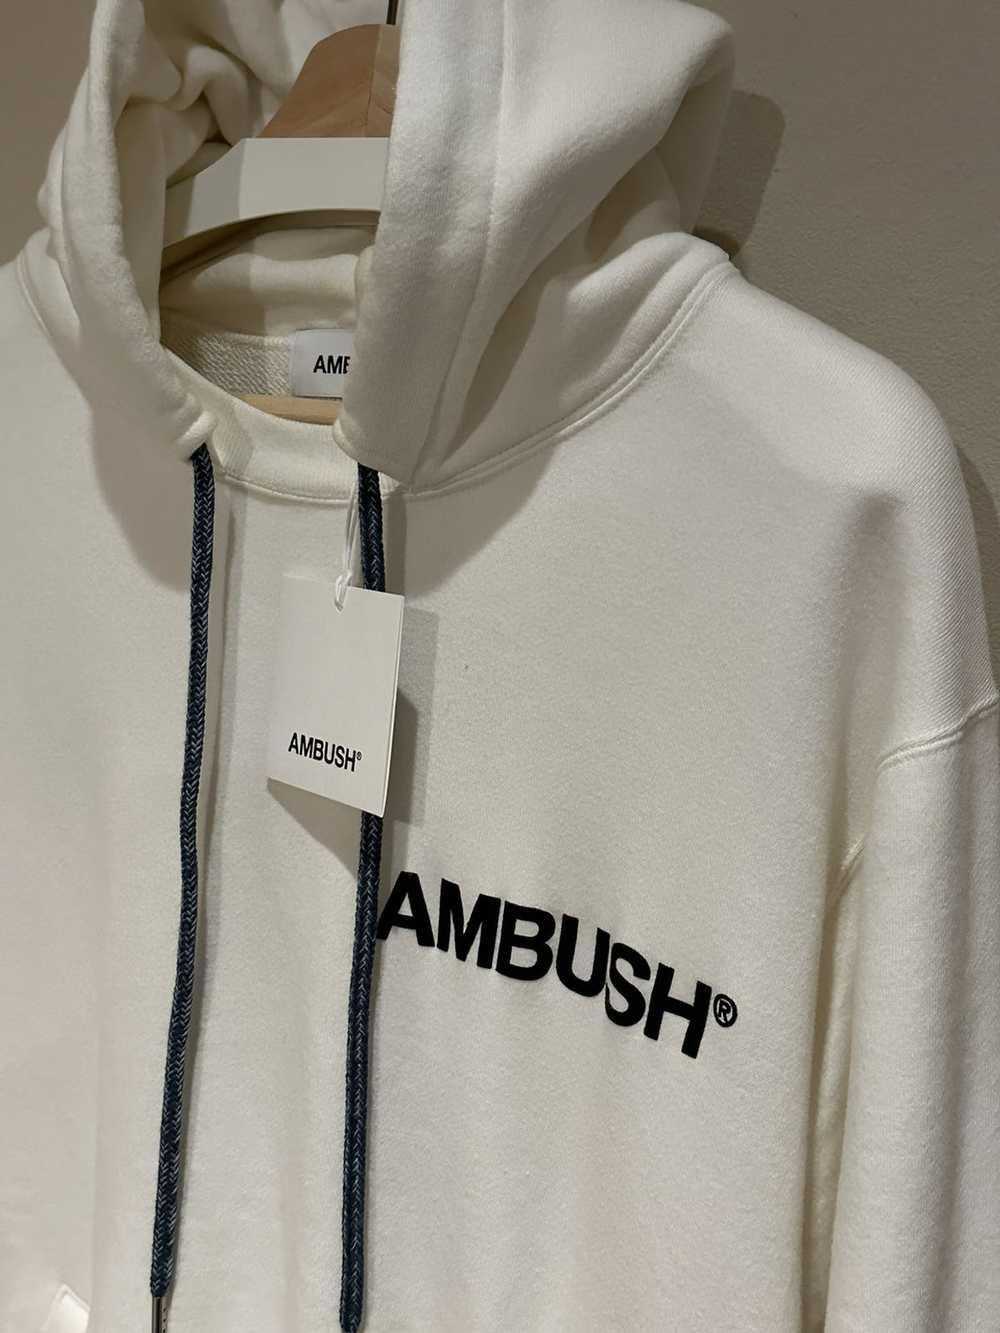 Ambush Design Ambush White Print Logo Hoodie Swea… - image 2